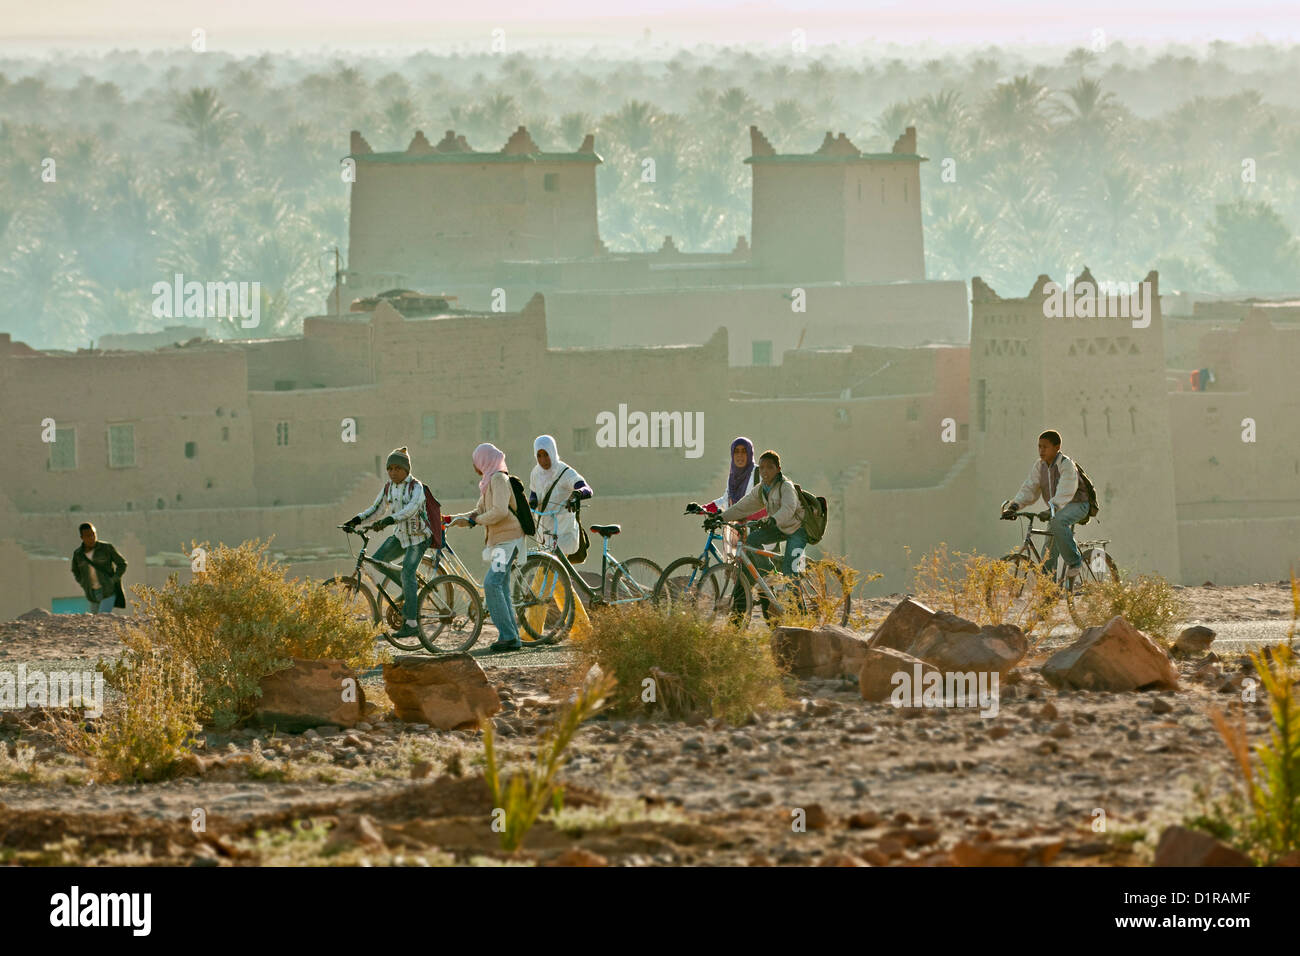 Il Marocco, vicino a Zagora, kasbah Ziwane. Tramonto sull'oasi e palme. kasbah e ksar. I bambini che vanno a scuola. Foto Stock